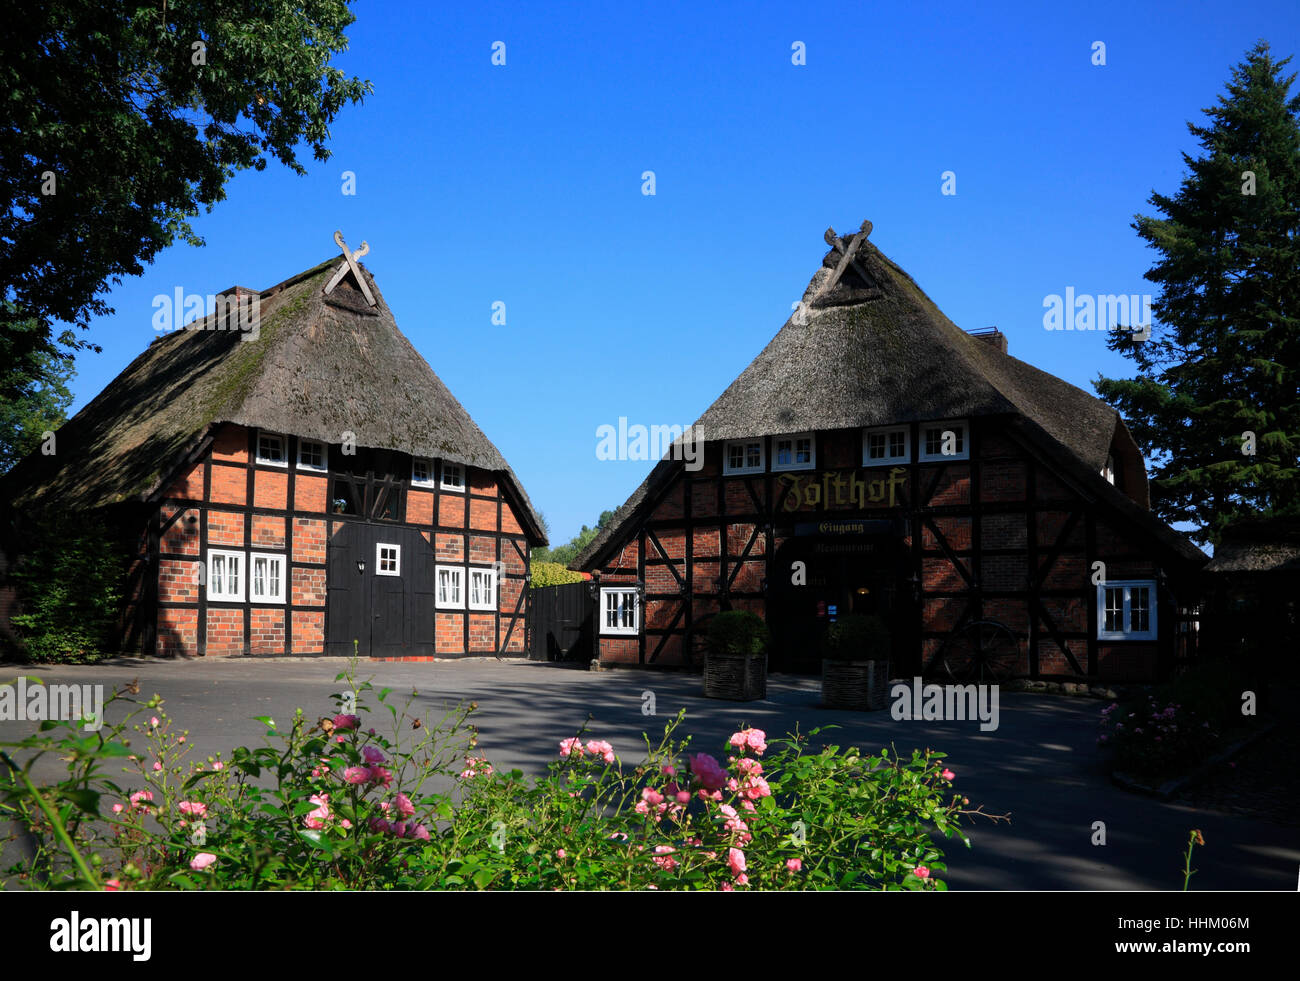 Hotel und Restaurant JOSTHOF Salzhausen, Lueneburger Heide, Basse-Saxe, Allemagne, Europe Banque D'Images